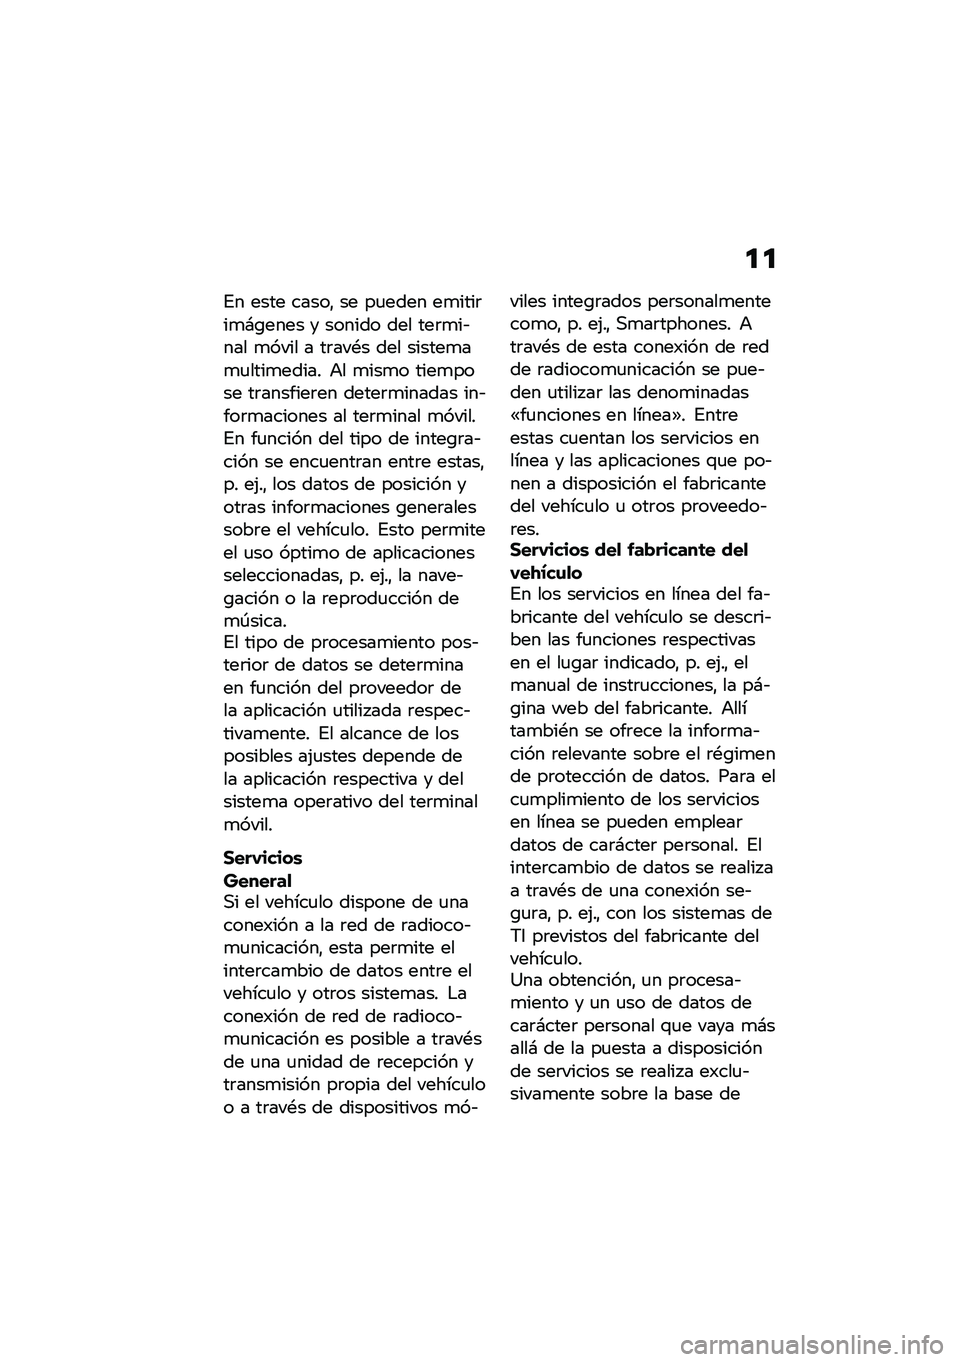 BMW MOTORRAD M 1000 RR 2021  Manual de instrucciones (in Spanish) �
�

�%� ���� �����" �� ��
���� ��
����	��
�#�\b���� � ������ ��� ���	�
��&��� �
���� � ��	���*� ��� ������
��
�
����
����� �+� �
�